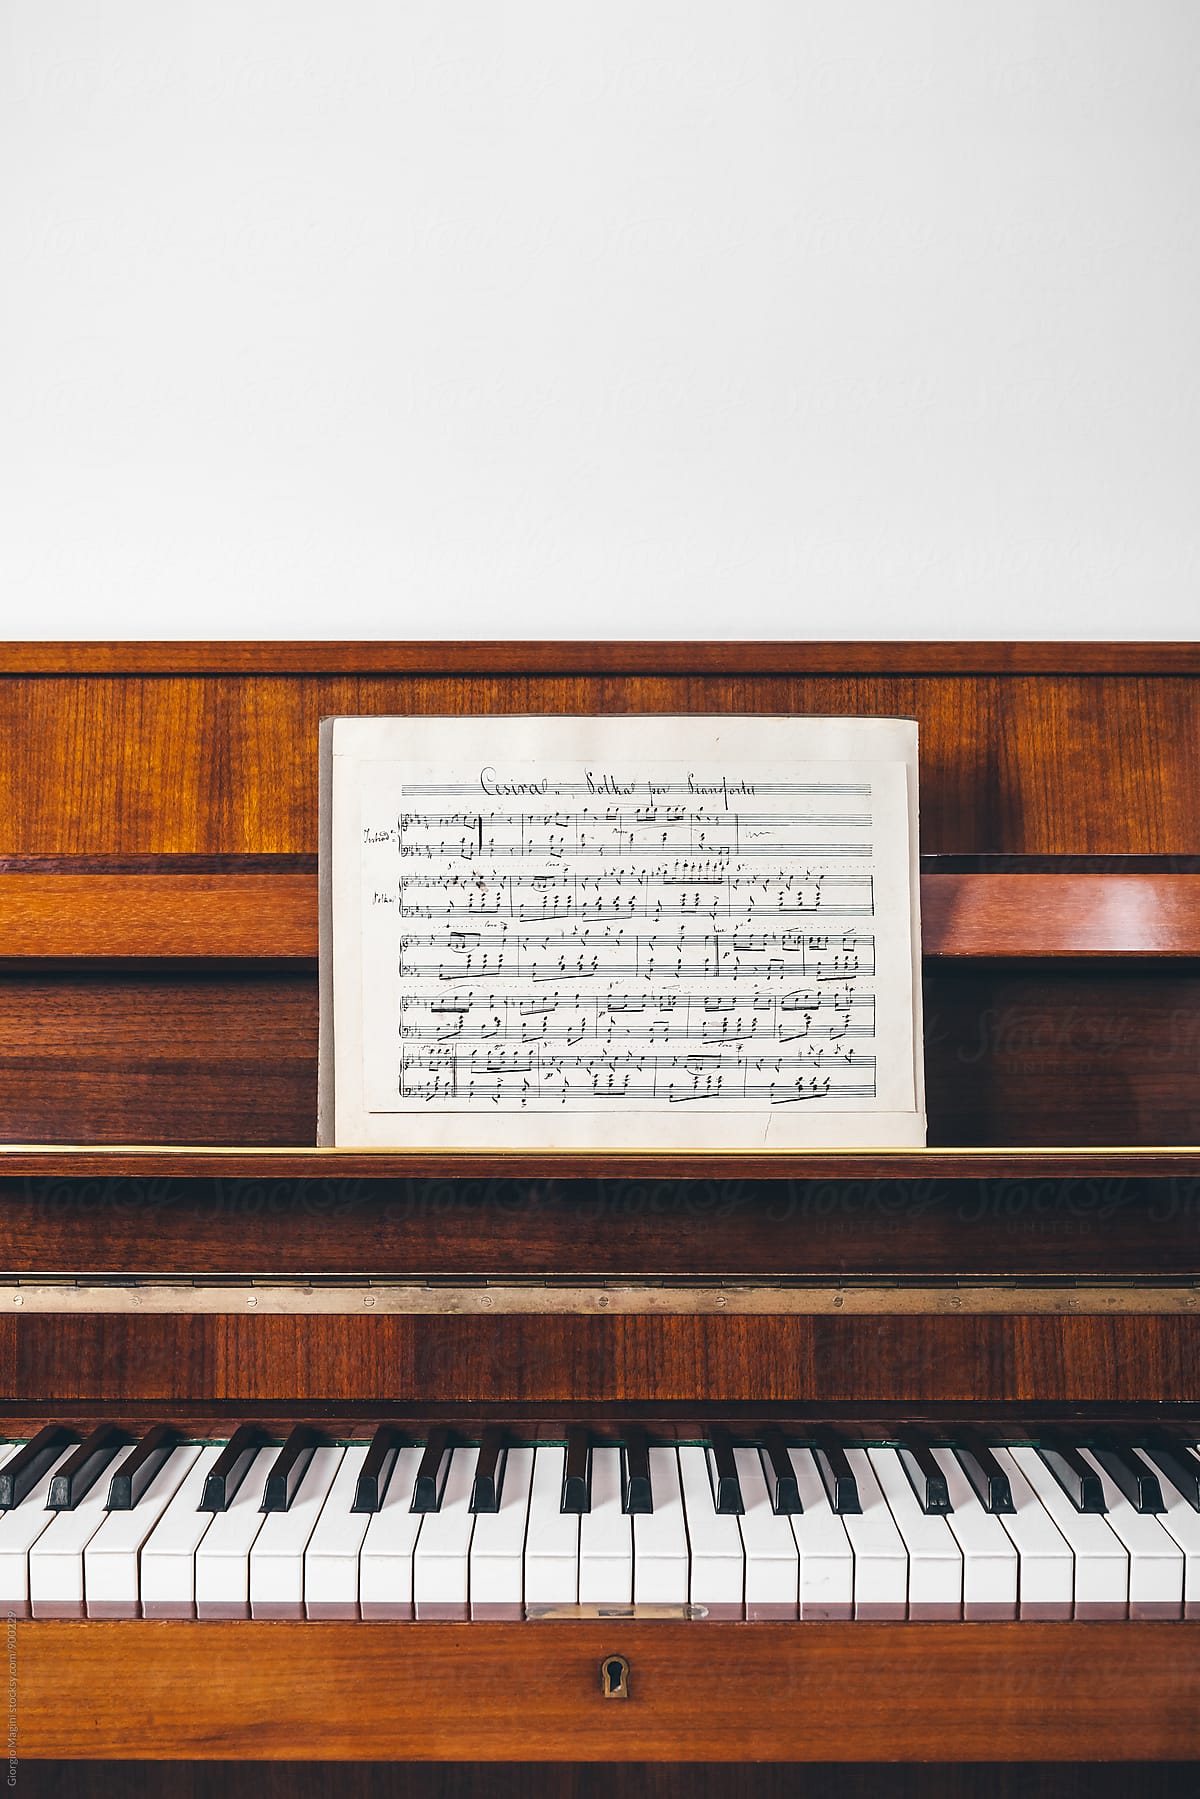 19th Century Handwritten Musical Score on Piano